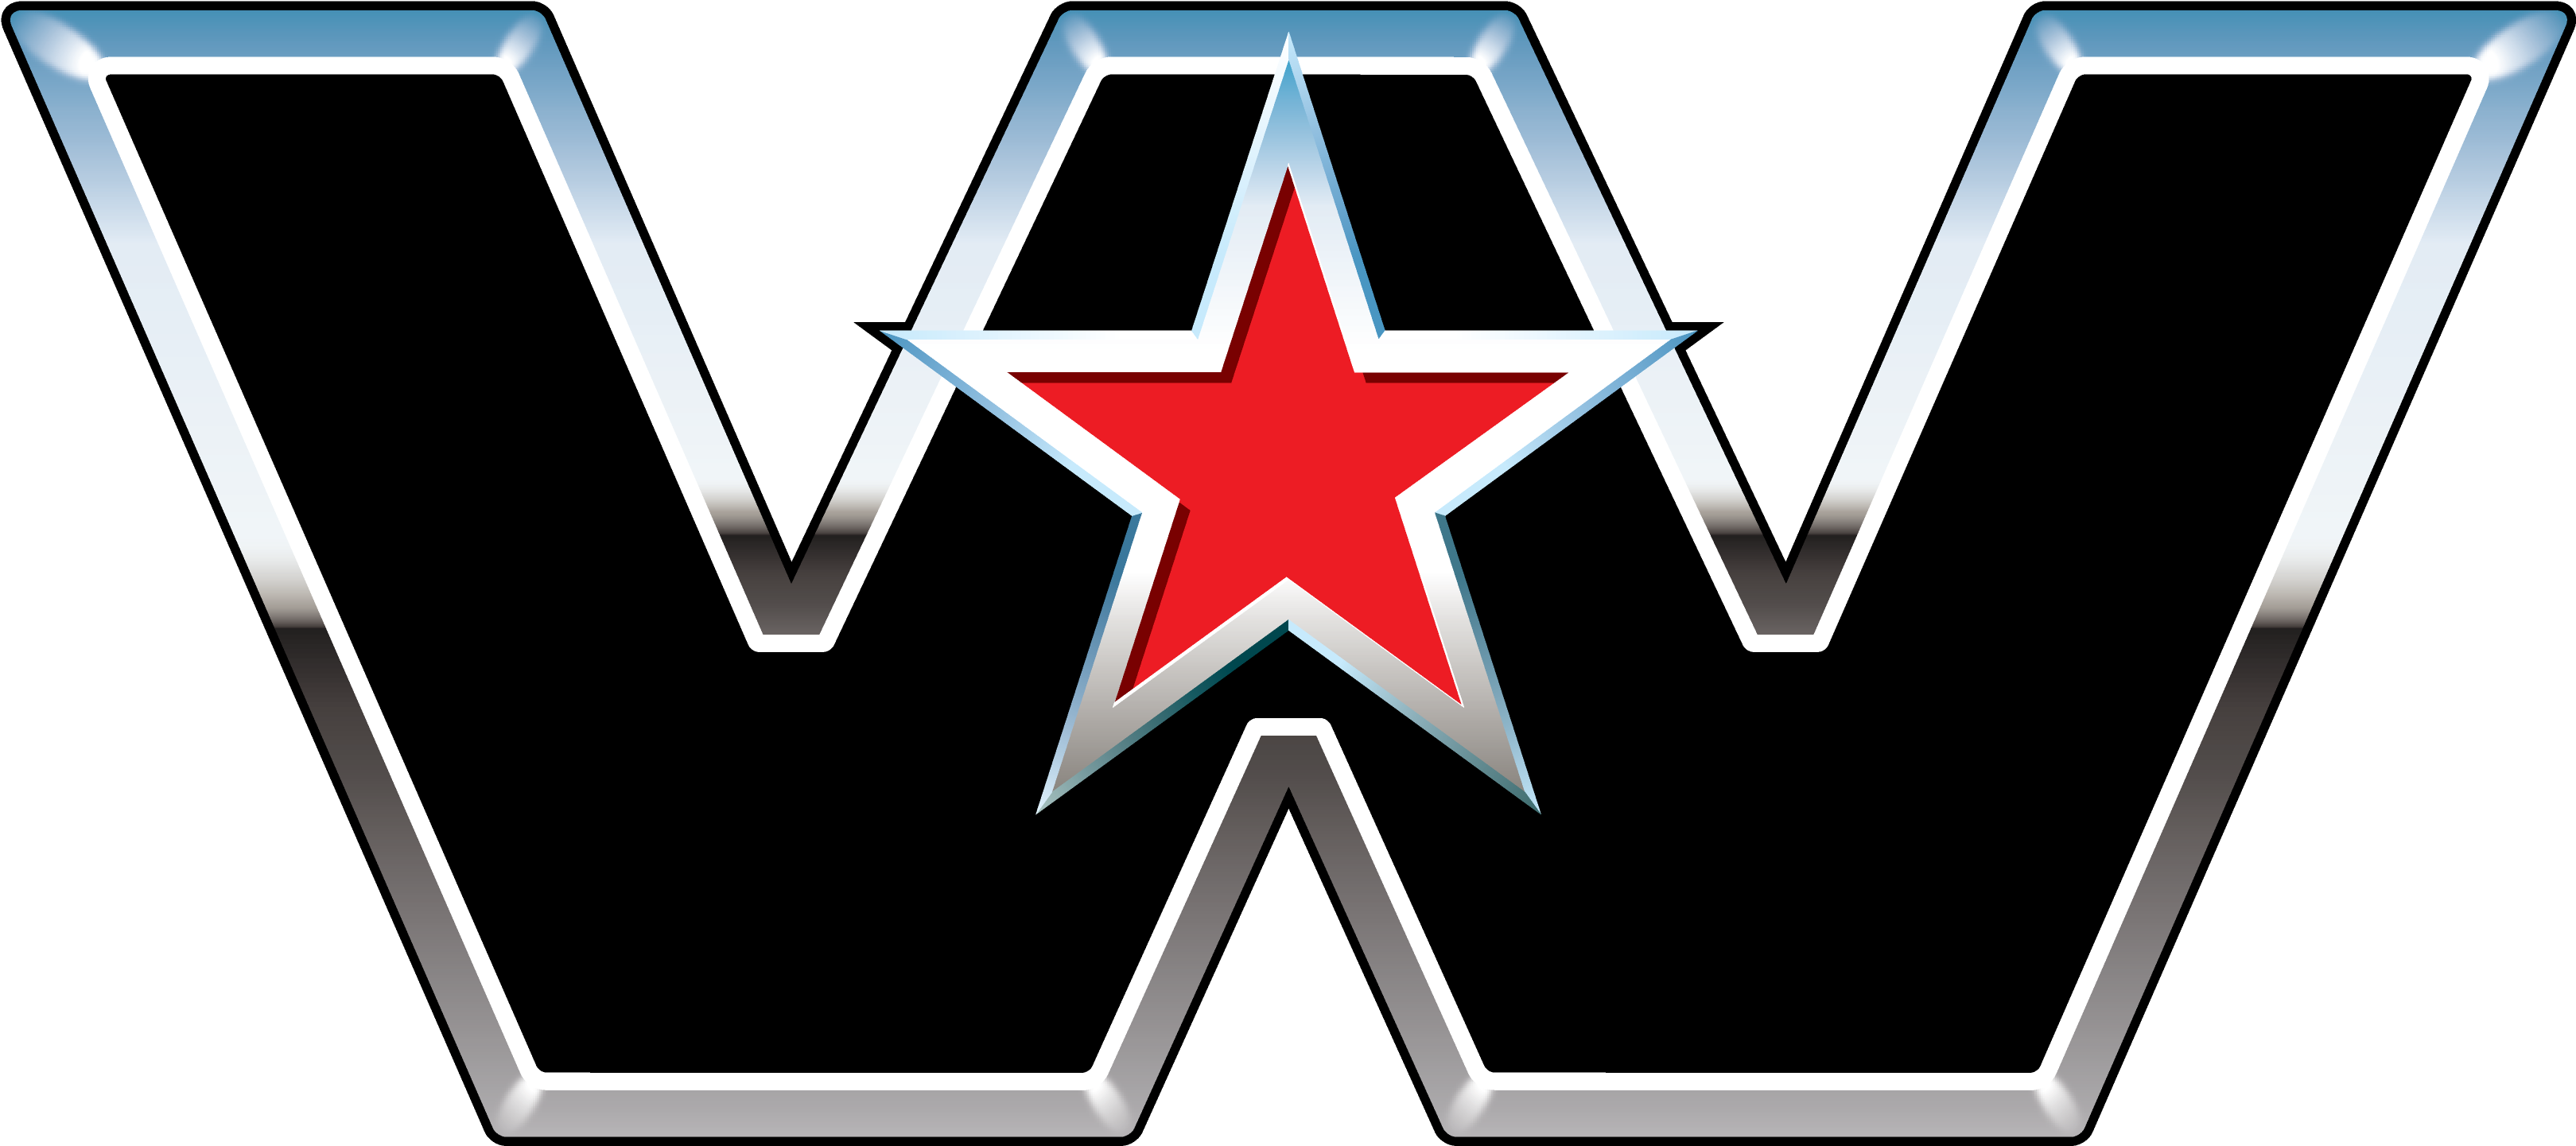 Western Star Truck Logo (3840x2160)